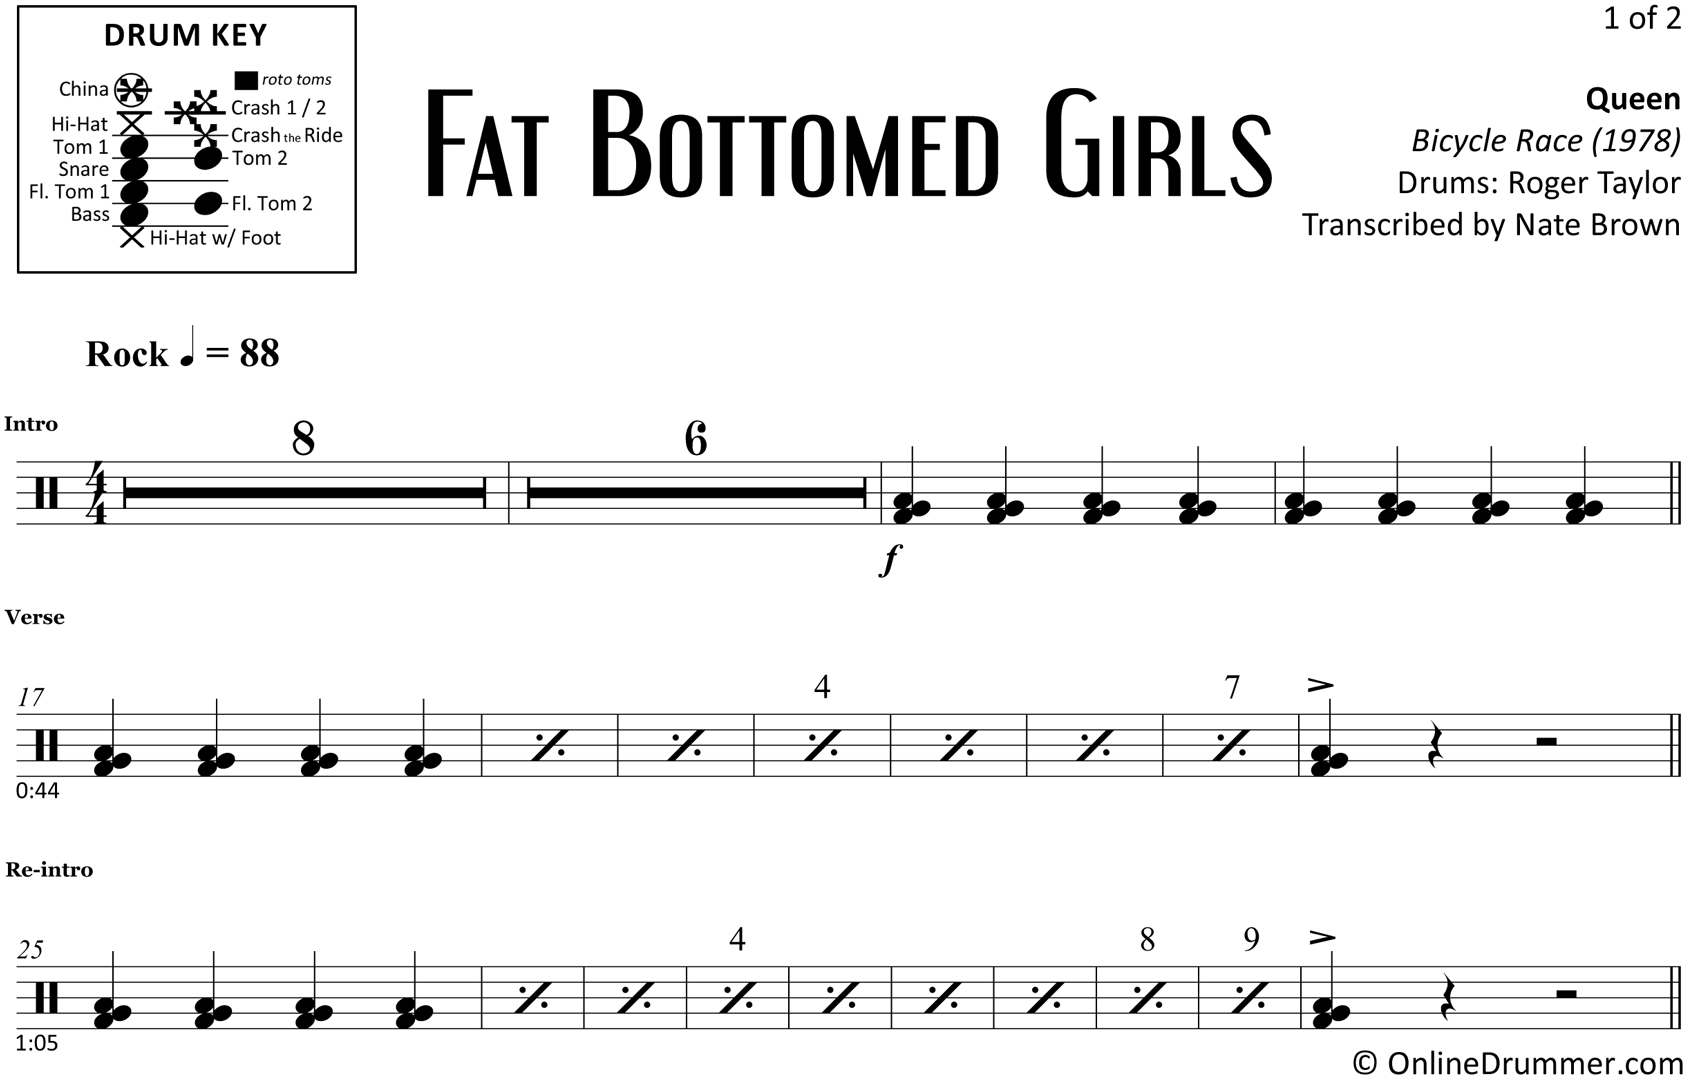 Fat Bottomed Girls - Queen - Drum Sheet Music